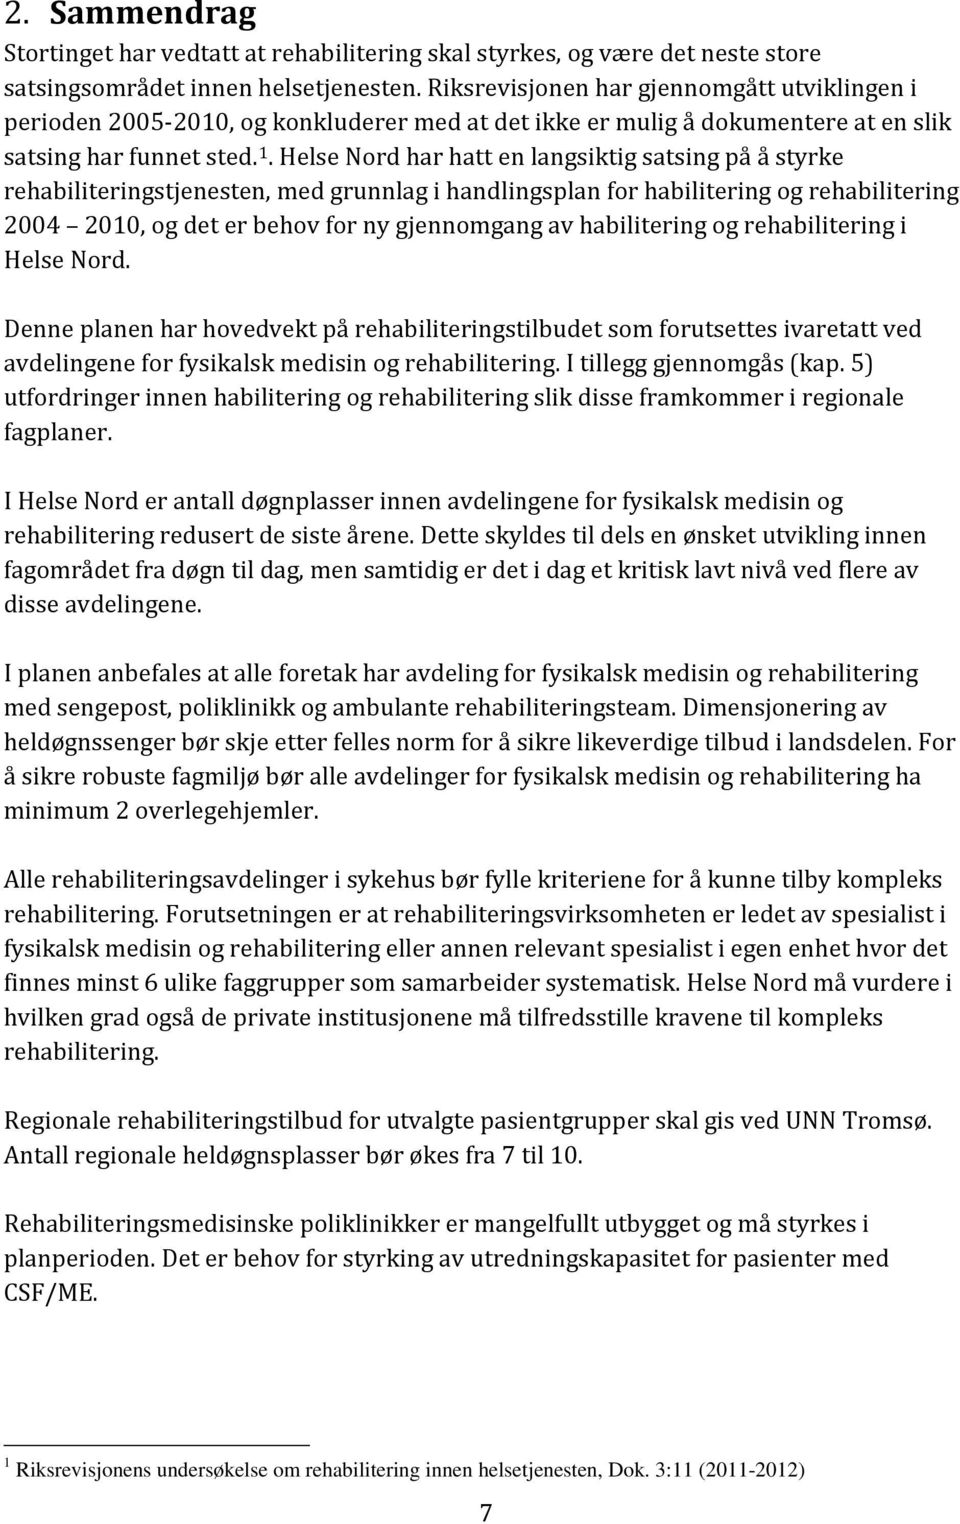 Helse Nord har hatt en langsiktig satsing på å styrke rehabiliteringstjenesten, med grunnlag i handlingsplan for habilitering og rehabilitering 2004 2010, og det er behov for ny gjennomgang av